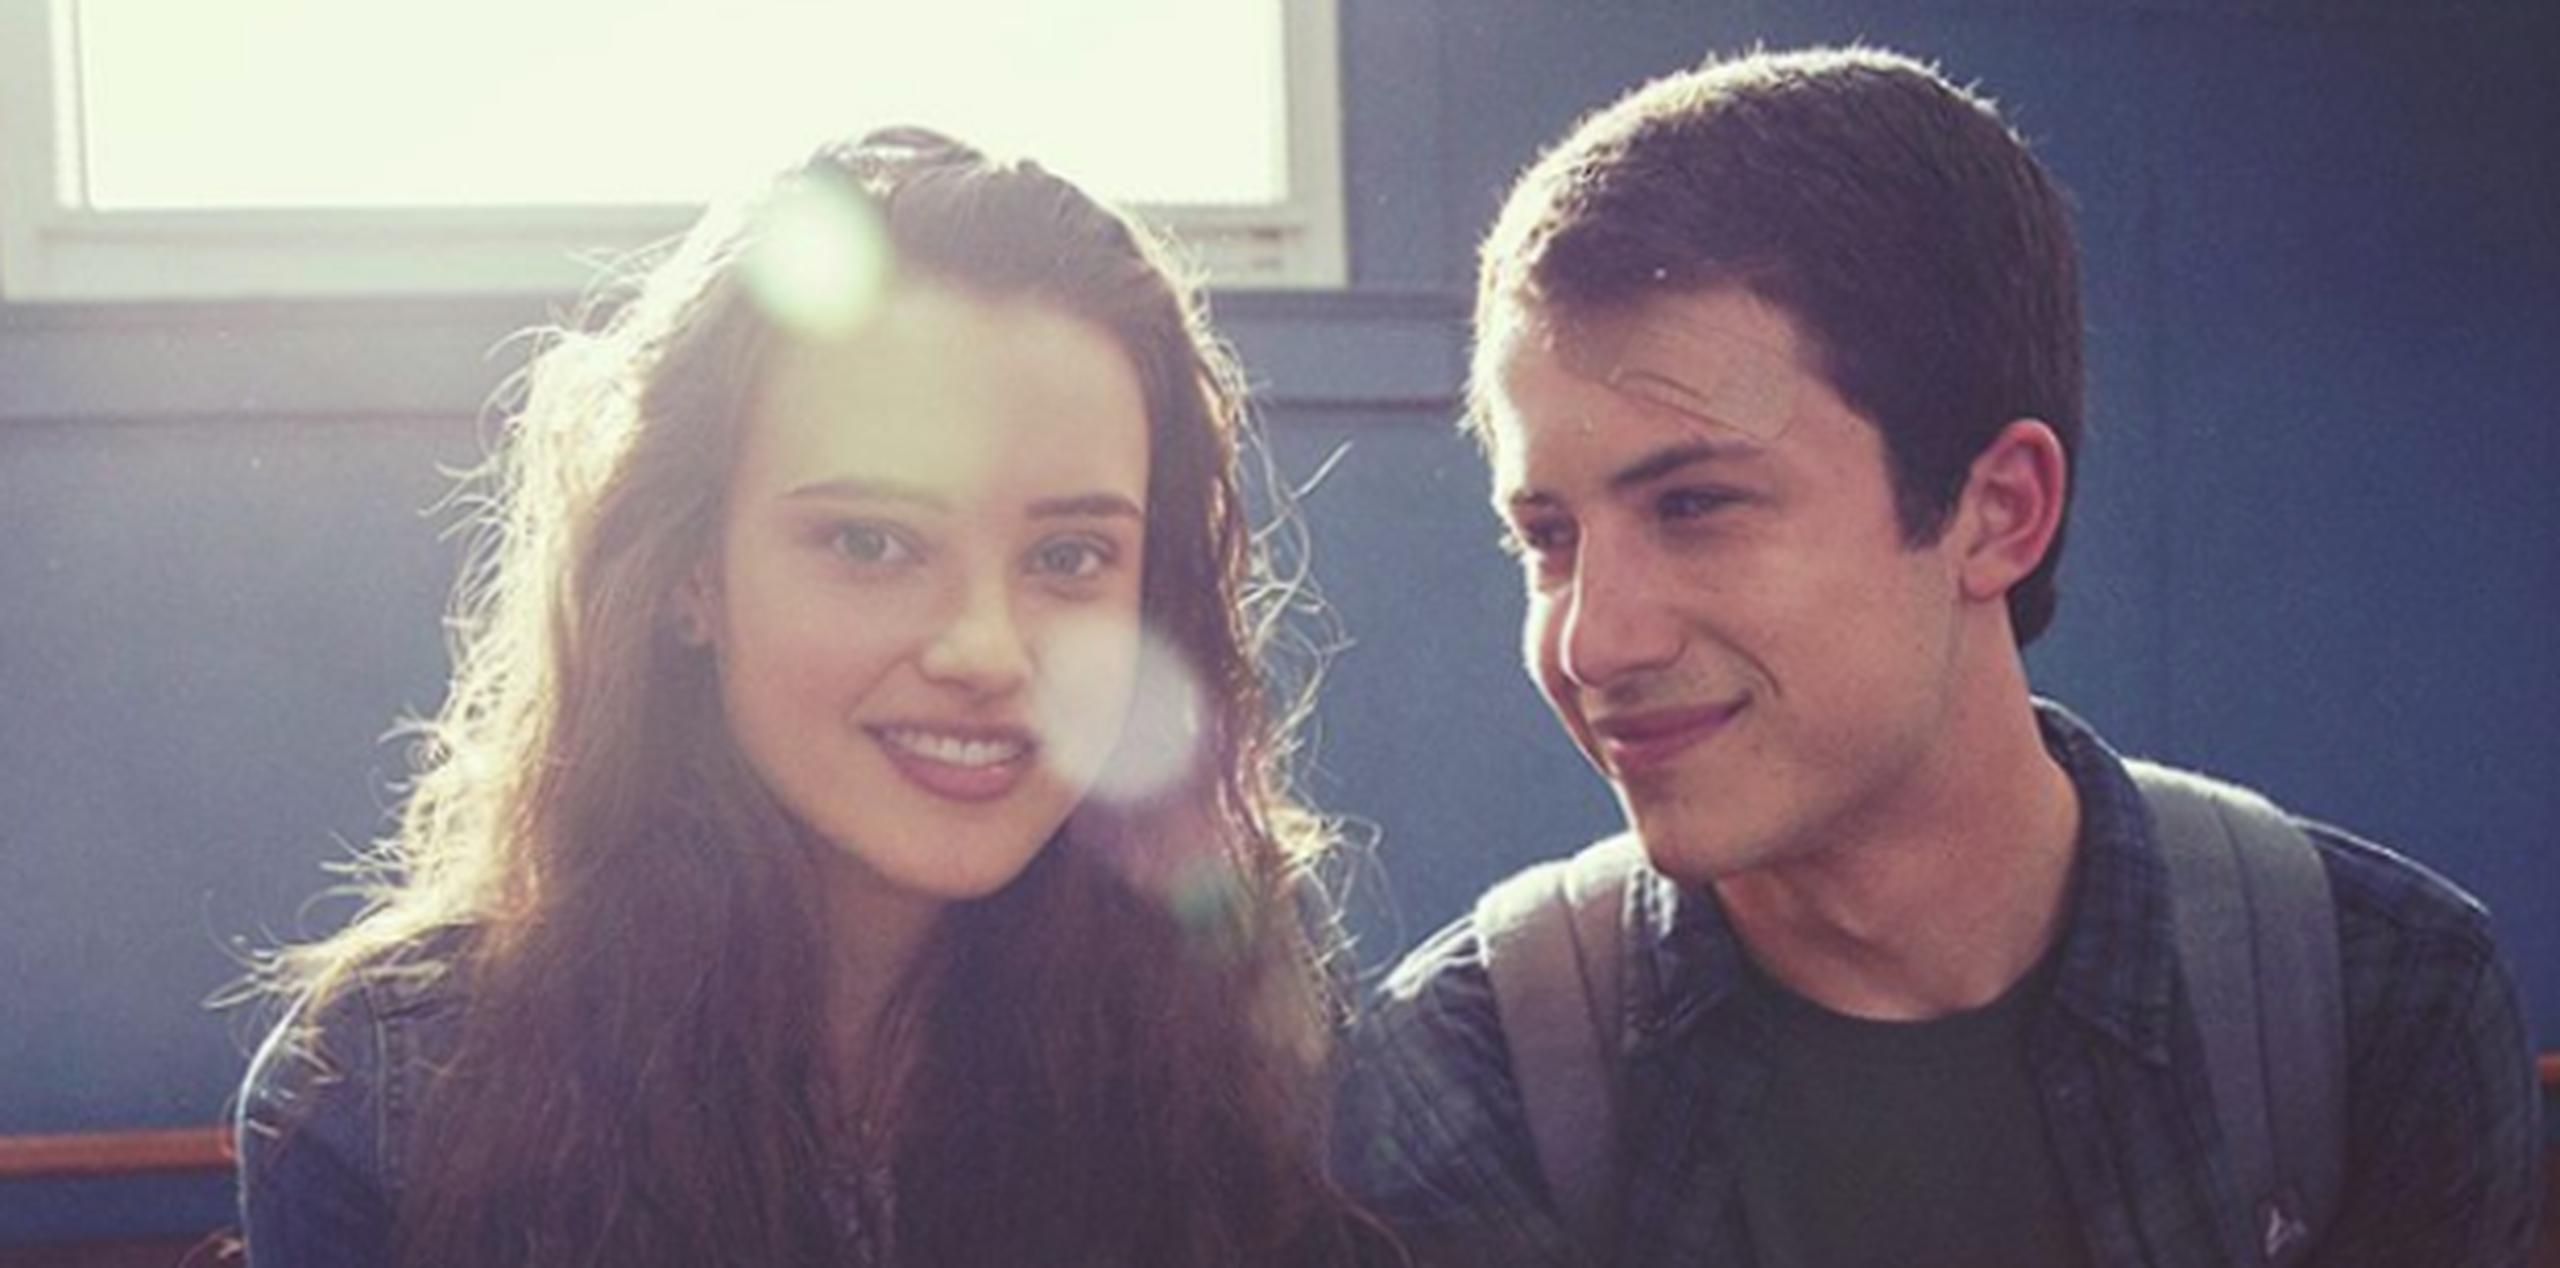 Los actores interpretan a Hannah Baker y Clay Jensen en la serie. (Instagram)